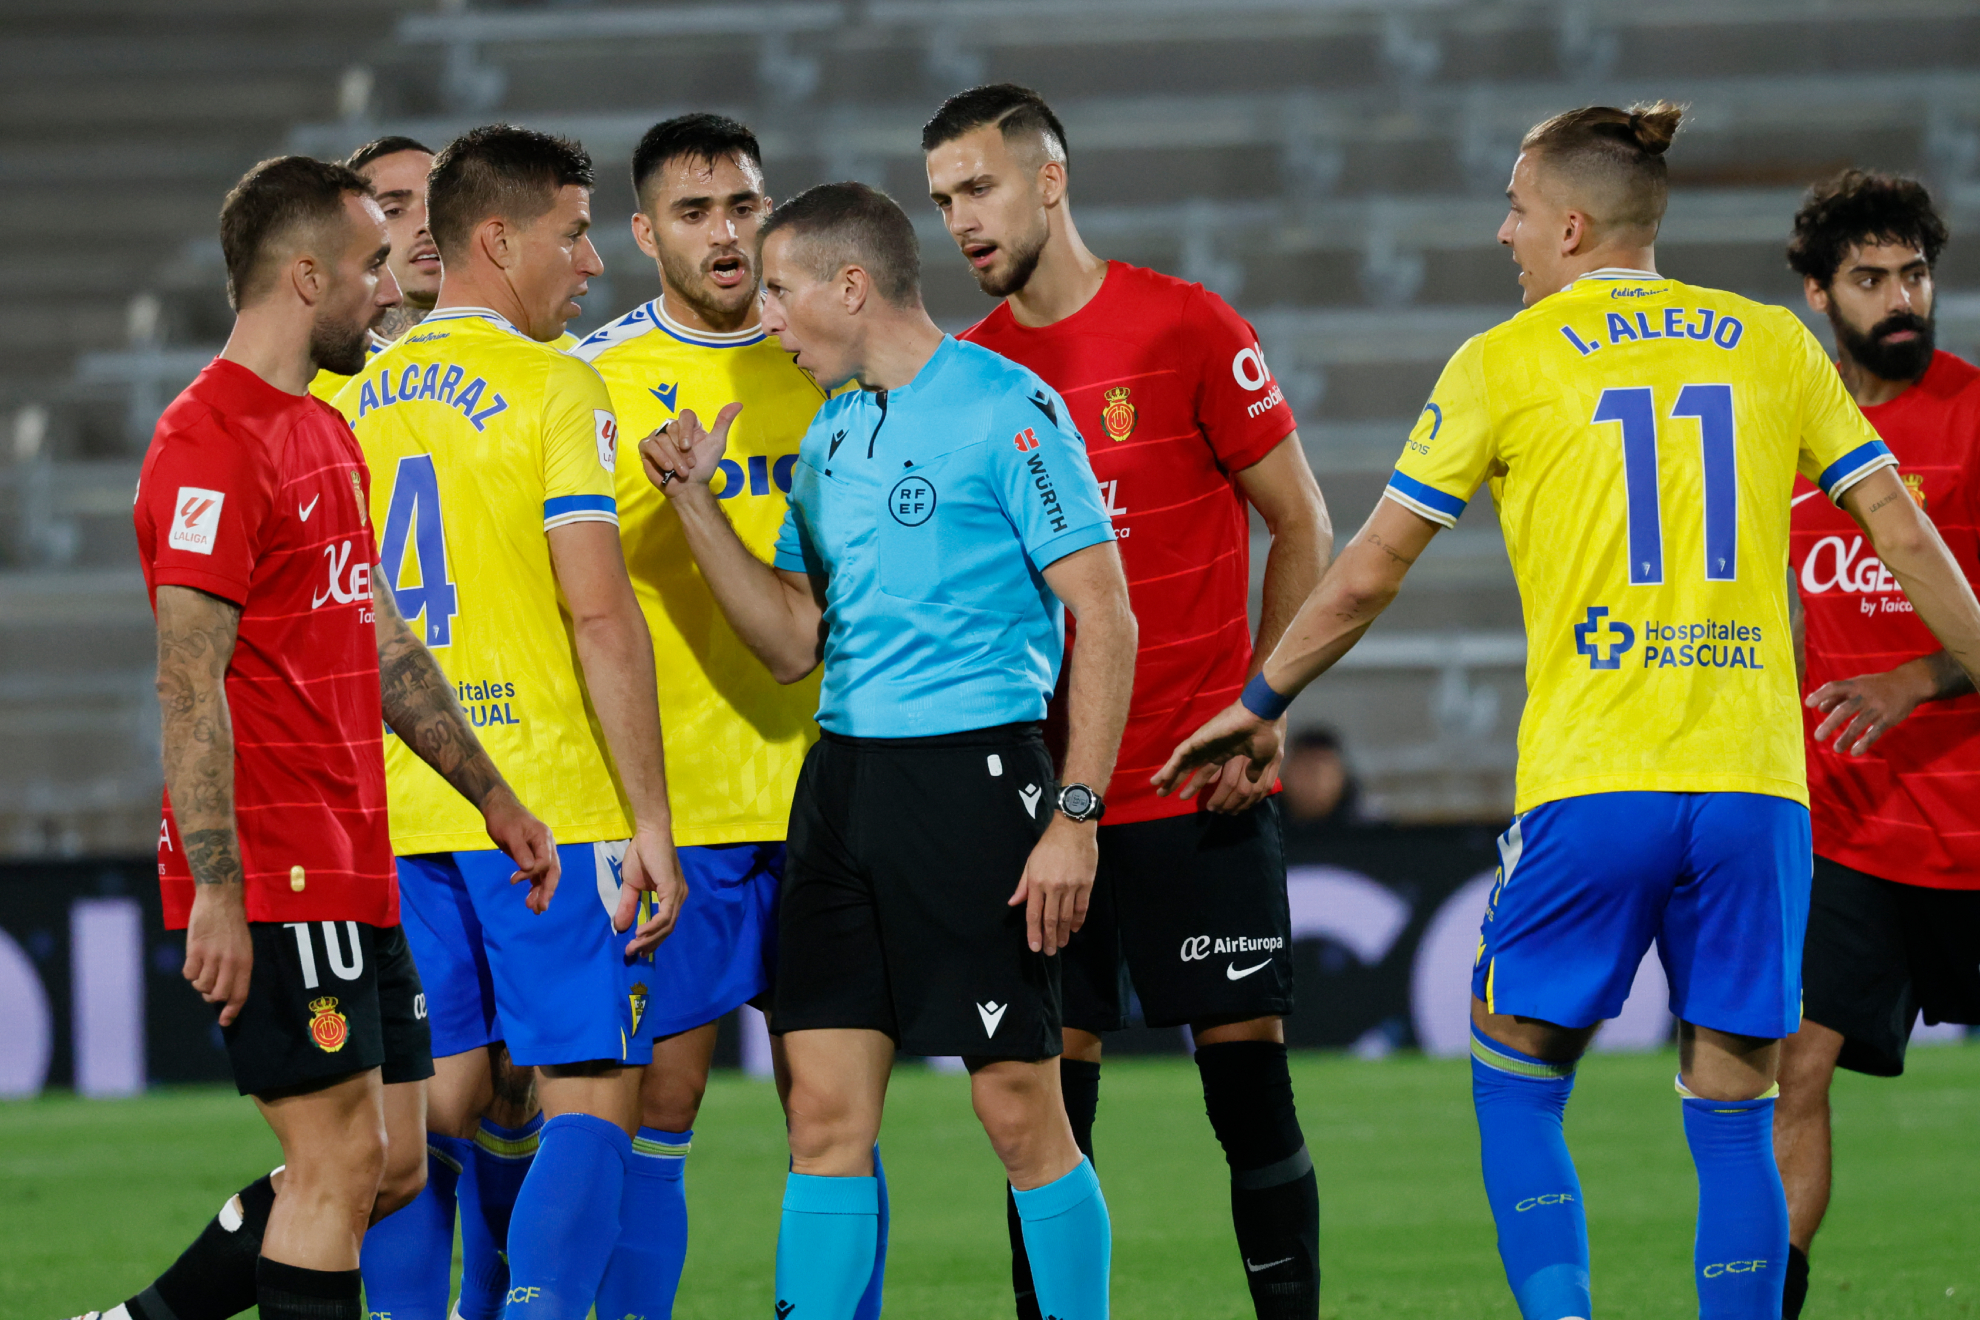 El colegiado advierte a los jugadores del Cádiz y el Mallorca